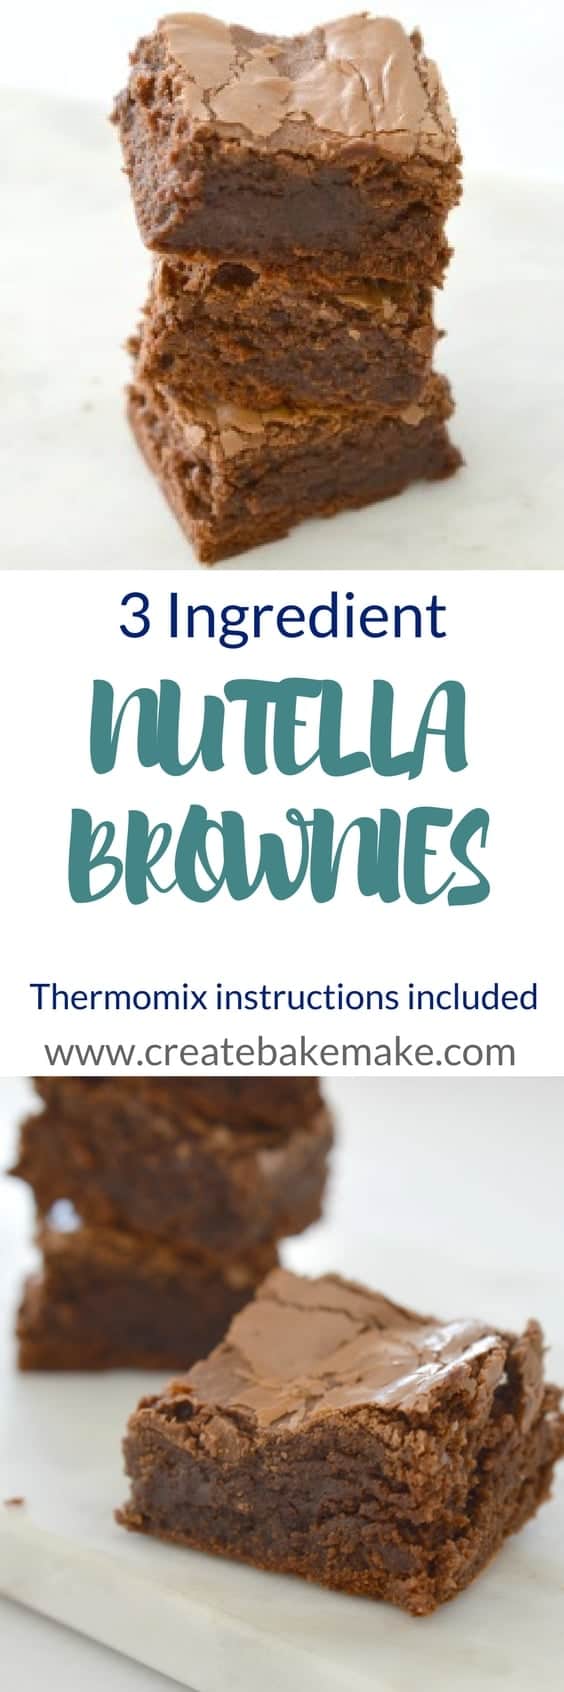 3 Ingredient Nutella Brownies Recipe